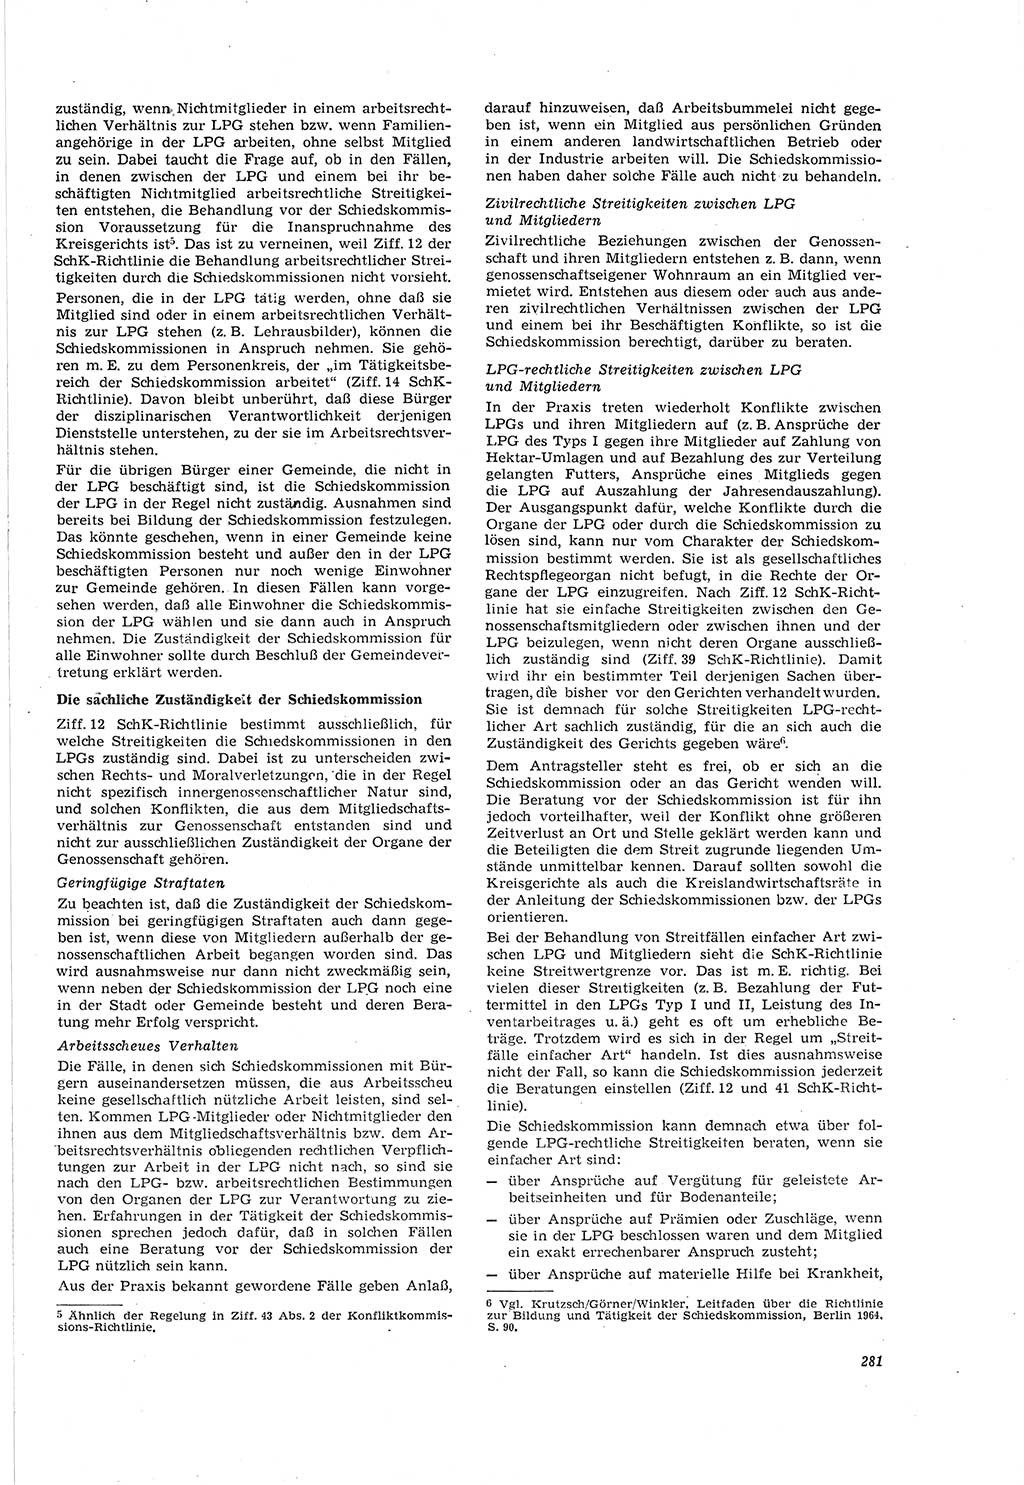 Neue Justiz (NJ), Zeitschrift für Recht und Rechtswissenschaft [Deutsche Demokratische Republik (DDR)], 20. Jahrgang 1966, Seite 281 (NJ DDR 1966, S. 281)